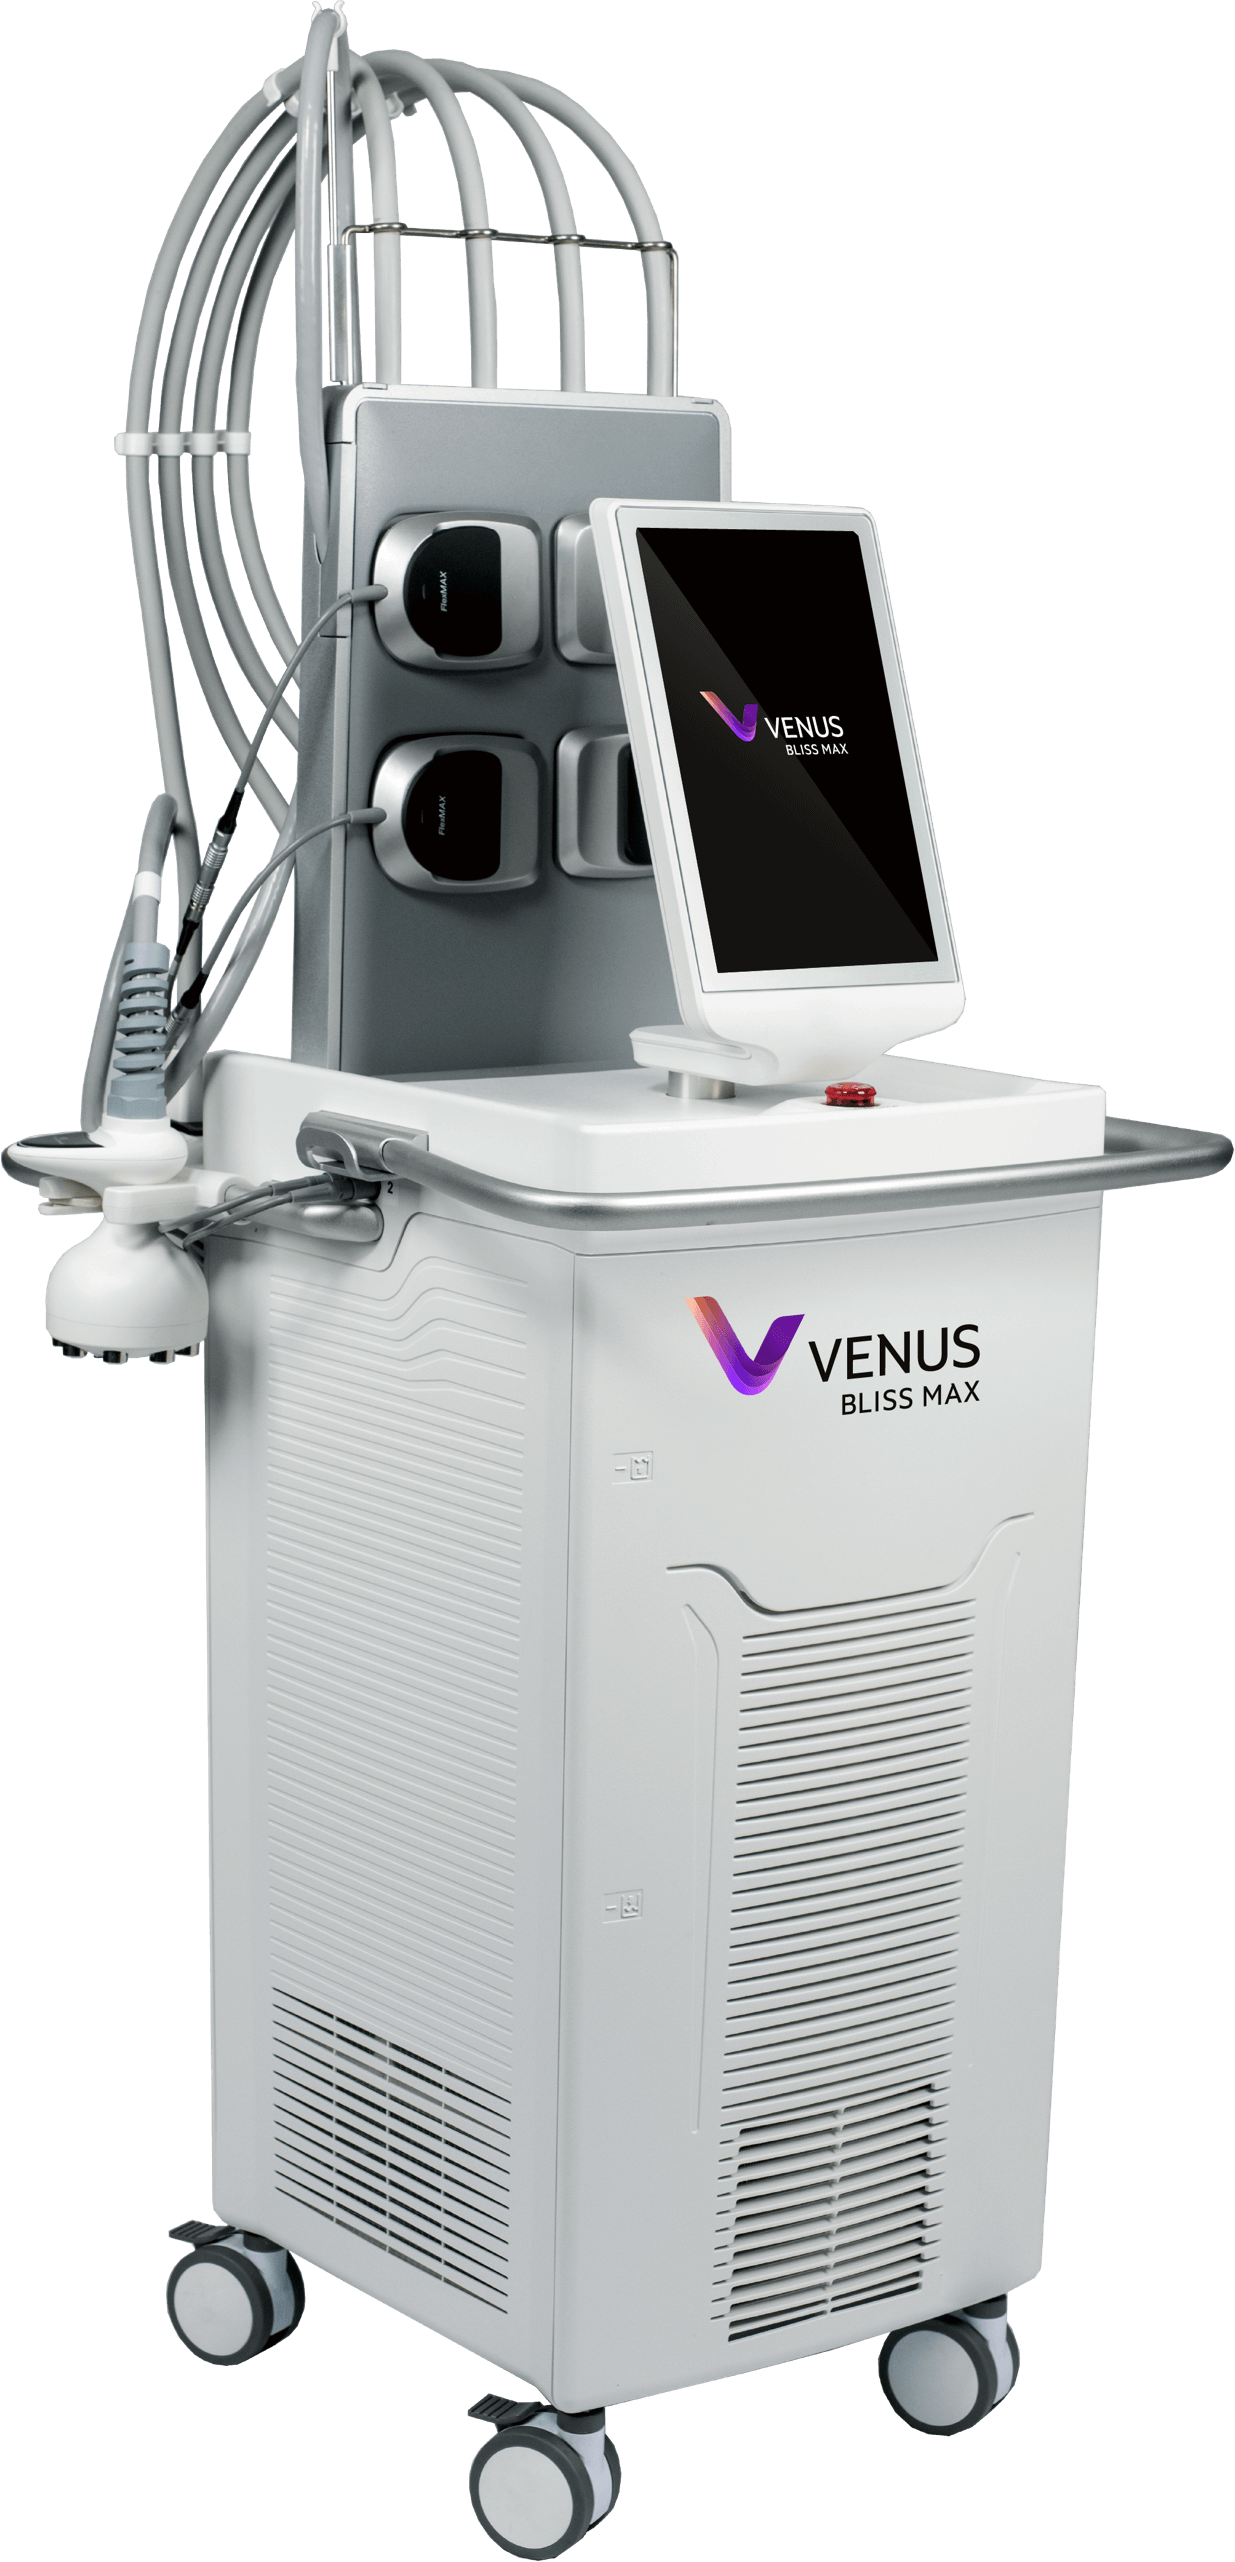 Venus Bliss Max - Venus' Non-Invasive Lipolysis Devices